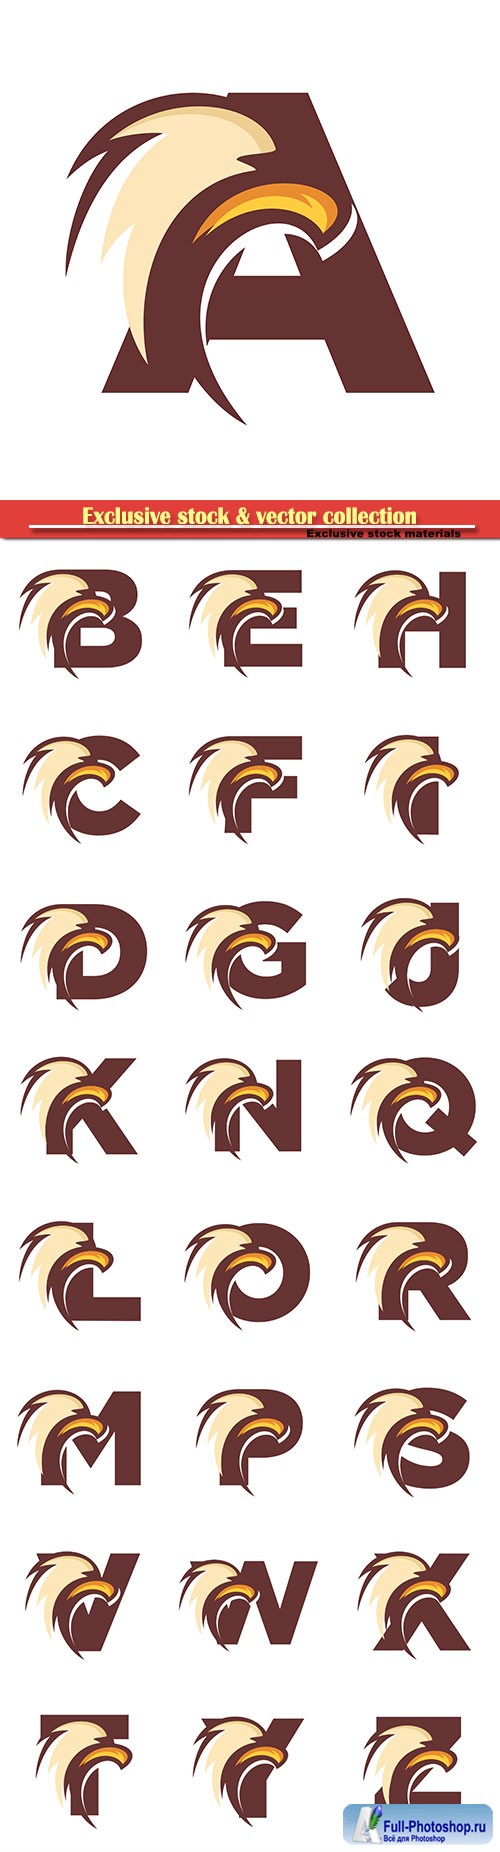 Eagle font vector alphabet illustration